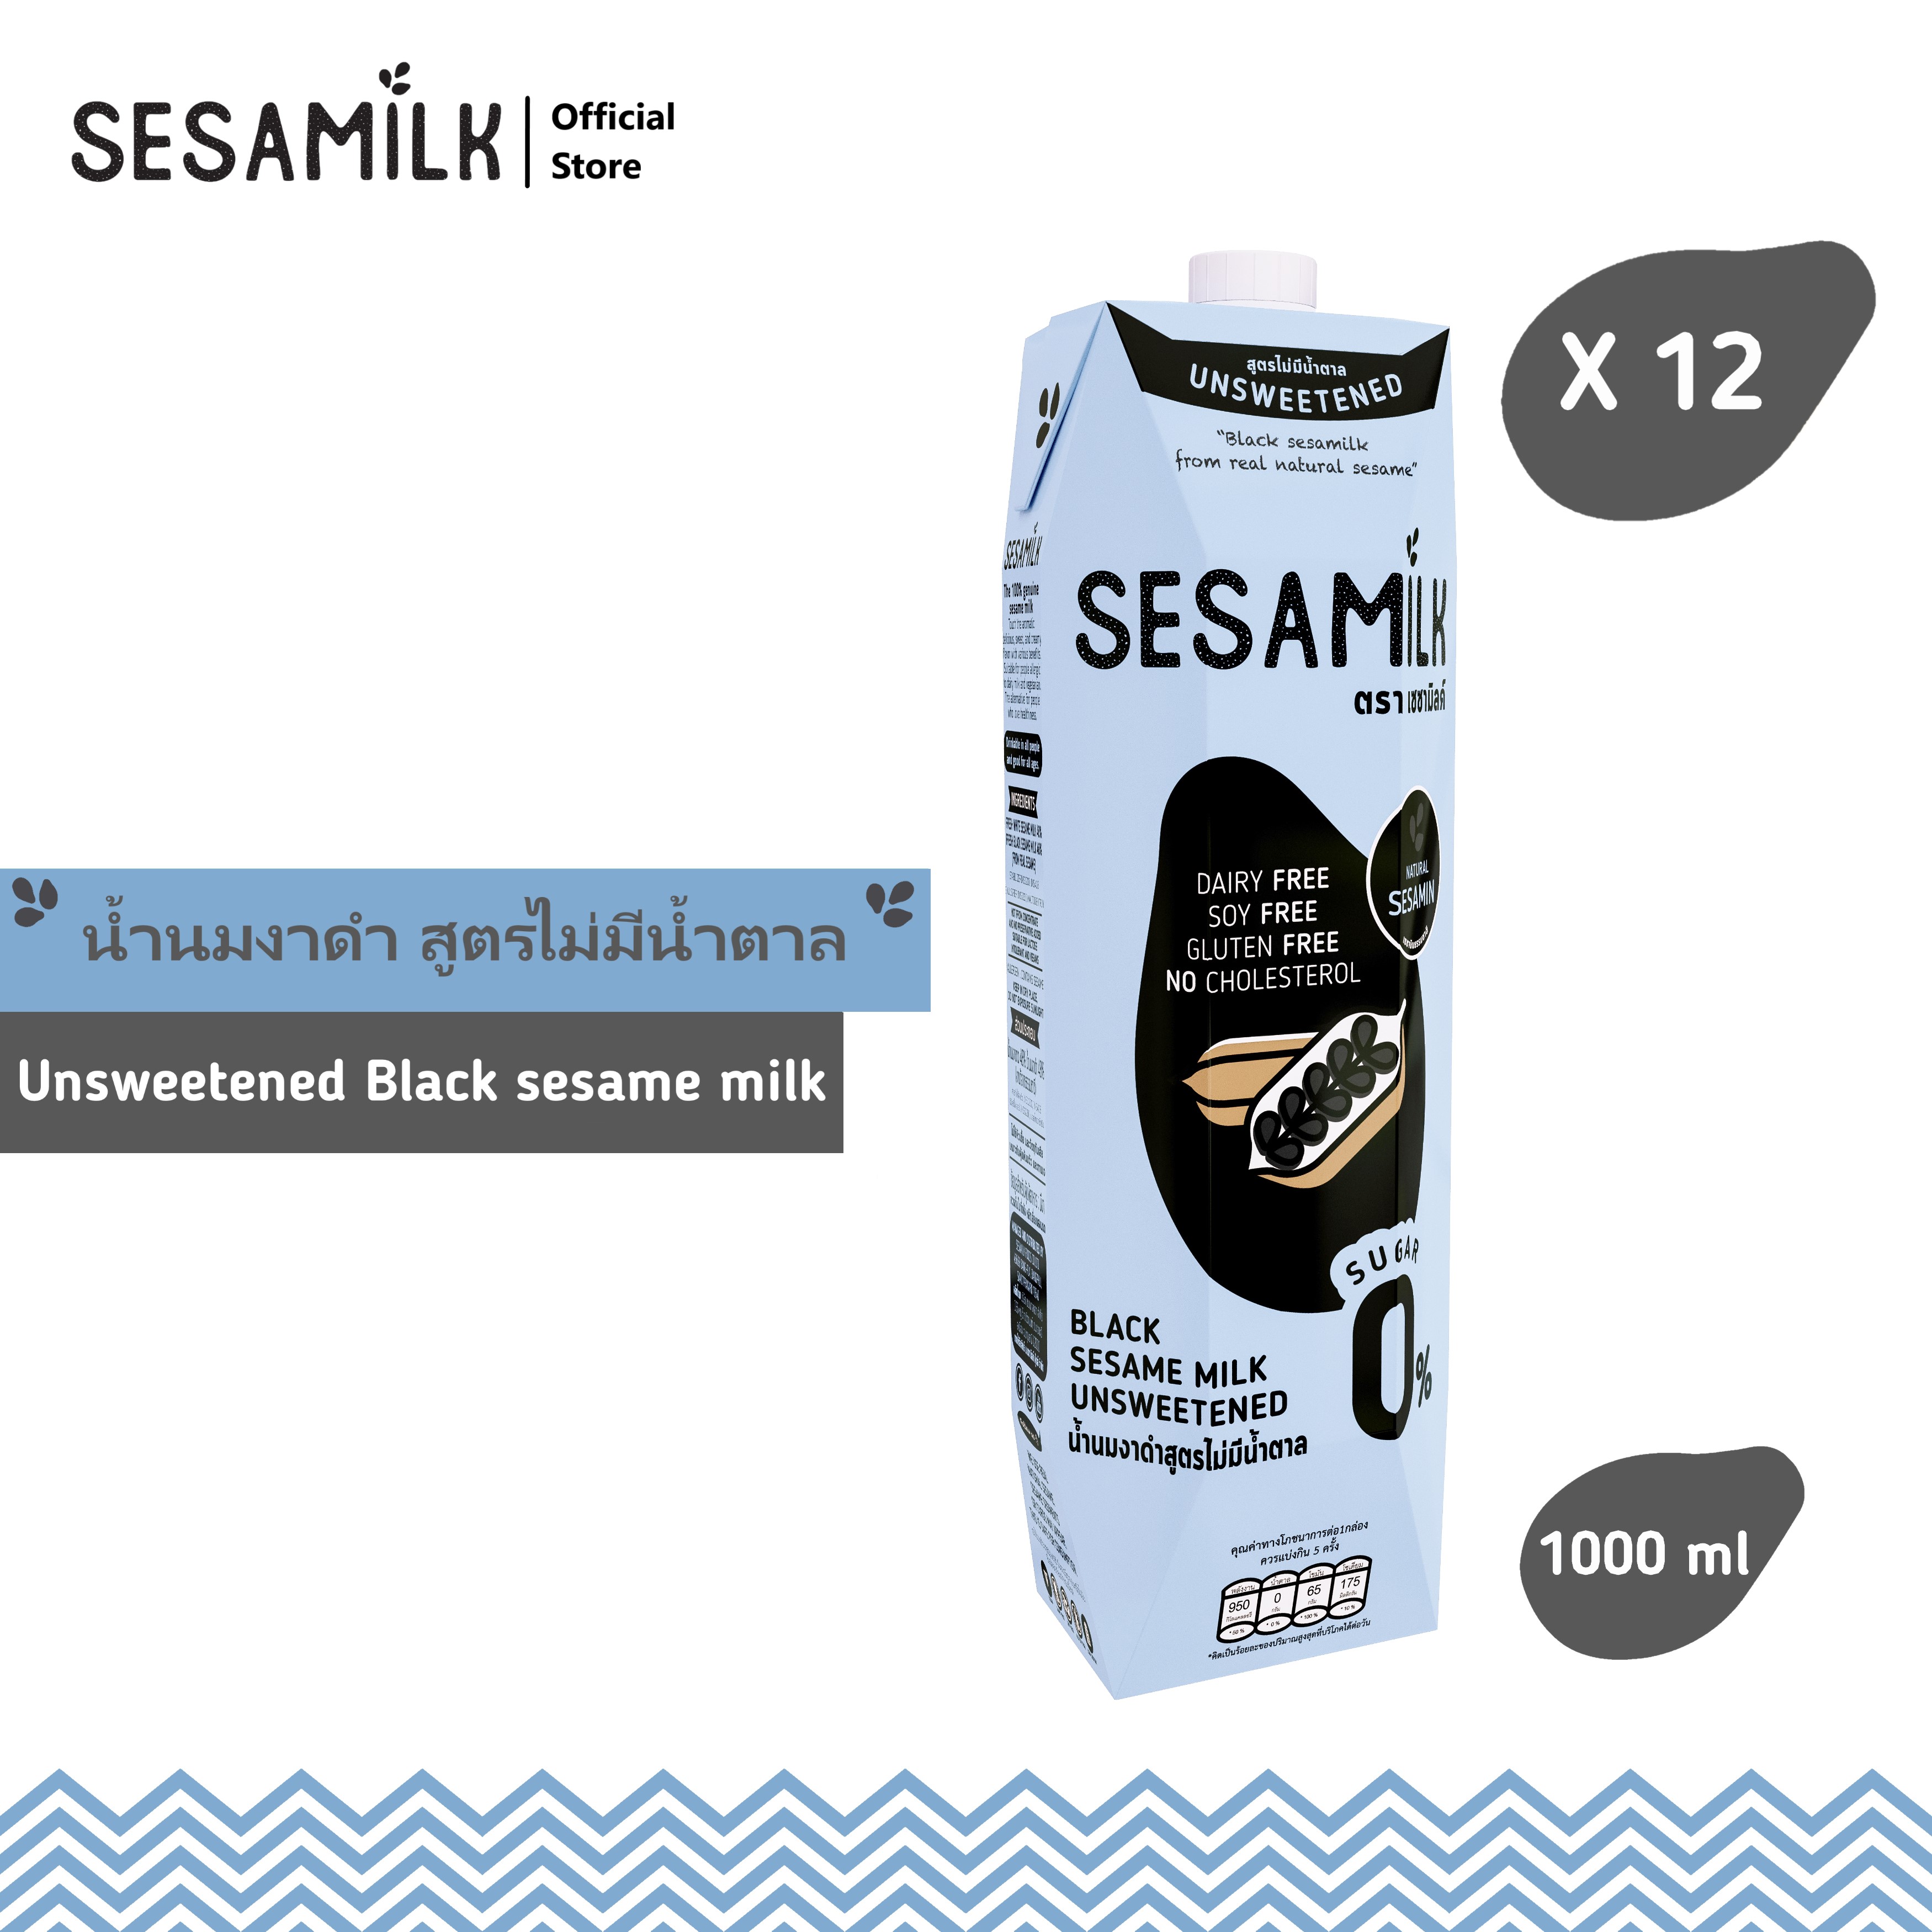 เซซามิลค์ น้ำนมงาดำ สูตรไม่มีน้ำตาล1000ml x 12  Sesamilk Unsweetened Black sesame milk 1000ml x 12